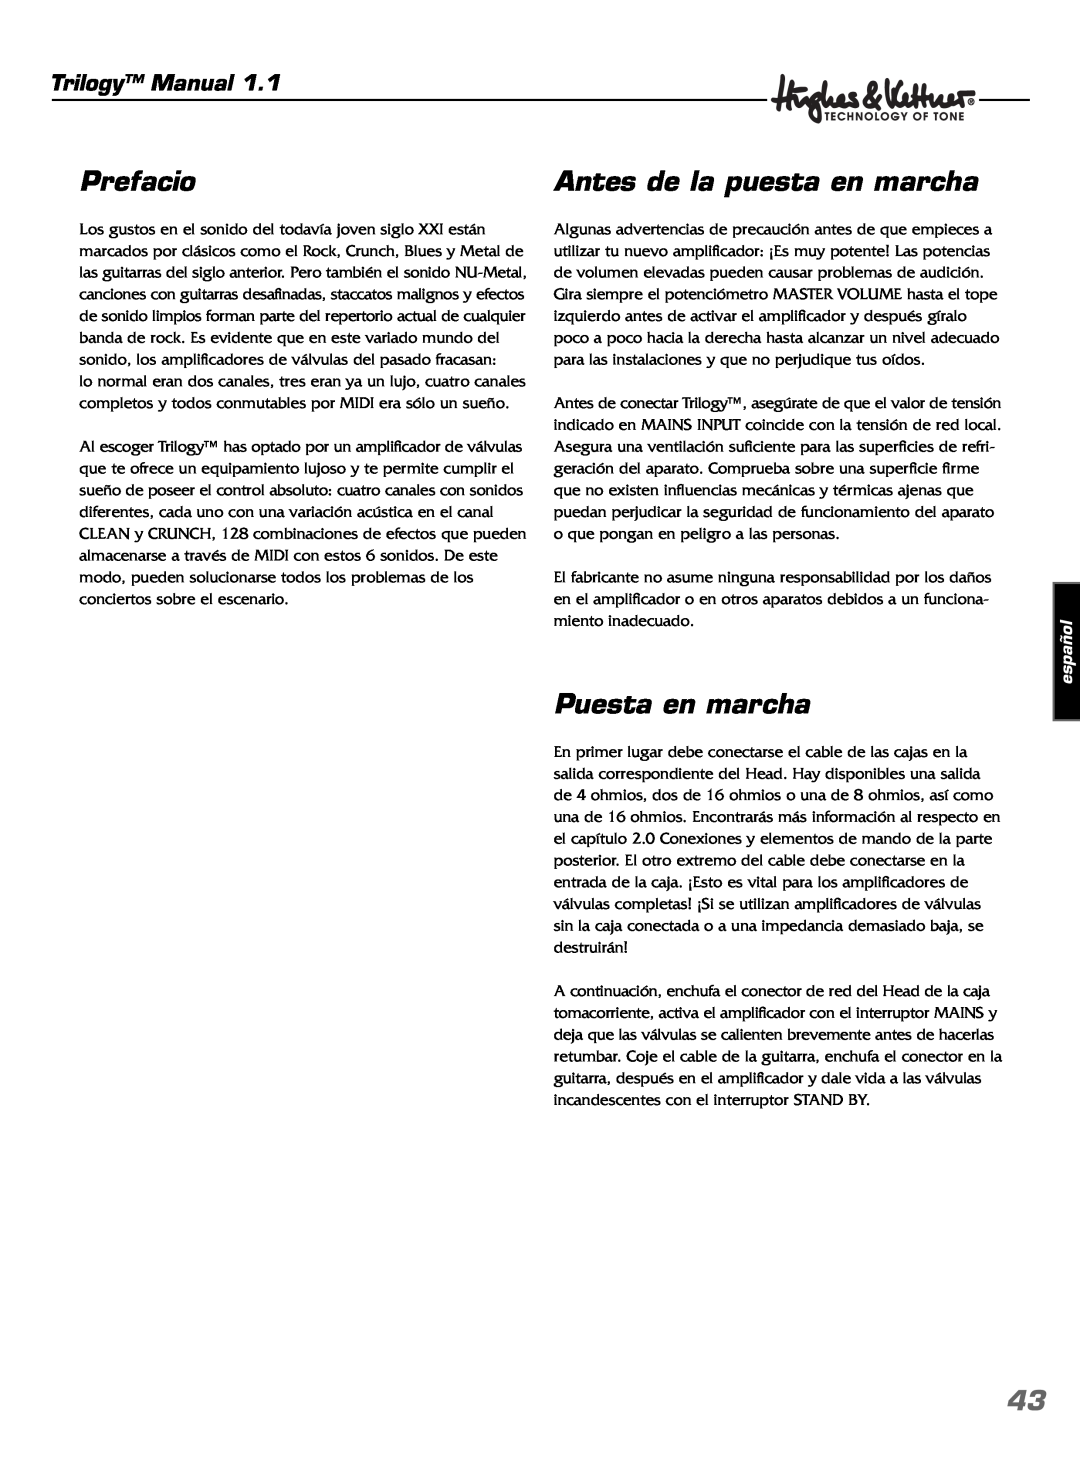 Hughes & Kettner TrilogyTM manual Prefacio, Antes de la puesta en marcha, Puesta en marcha, español, Trilogy Manual 